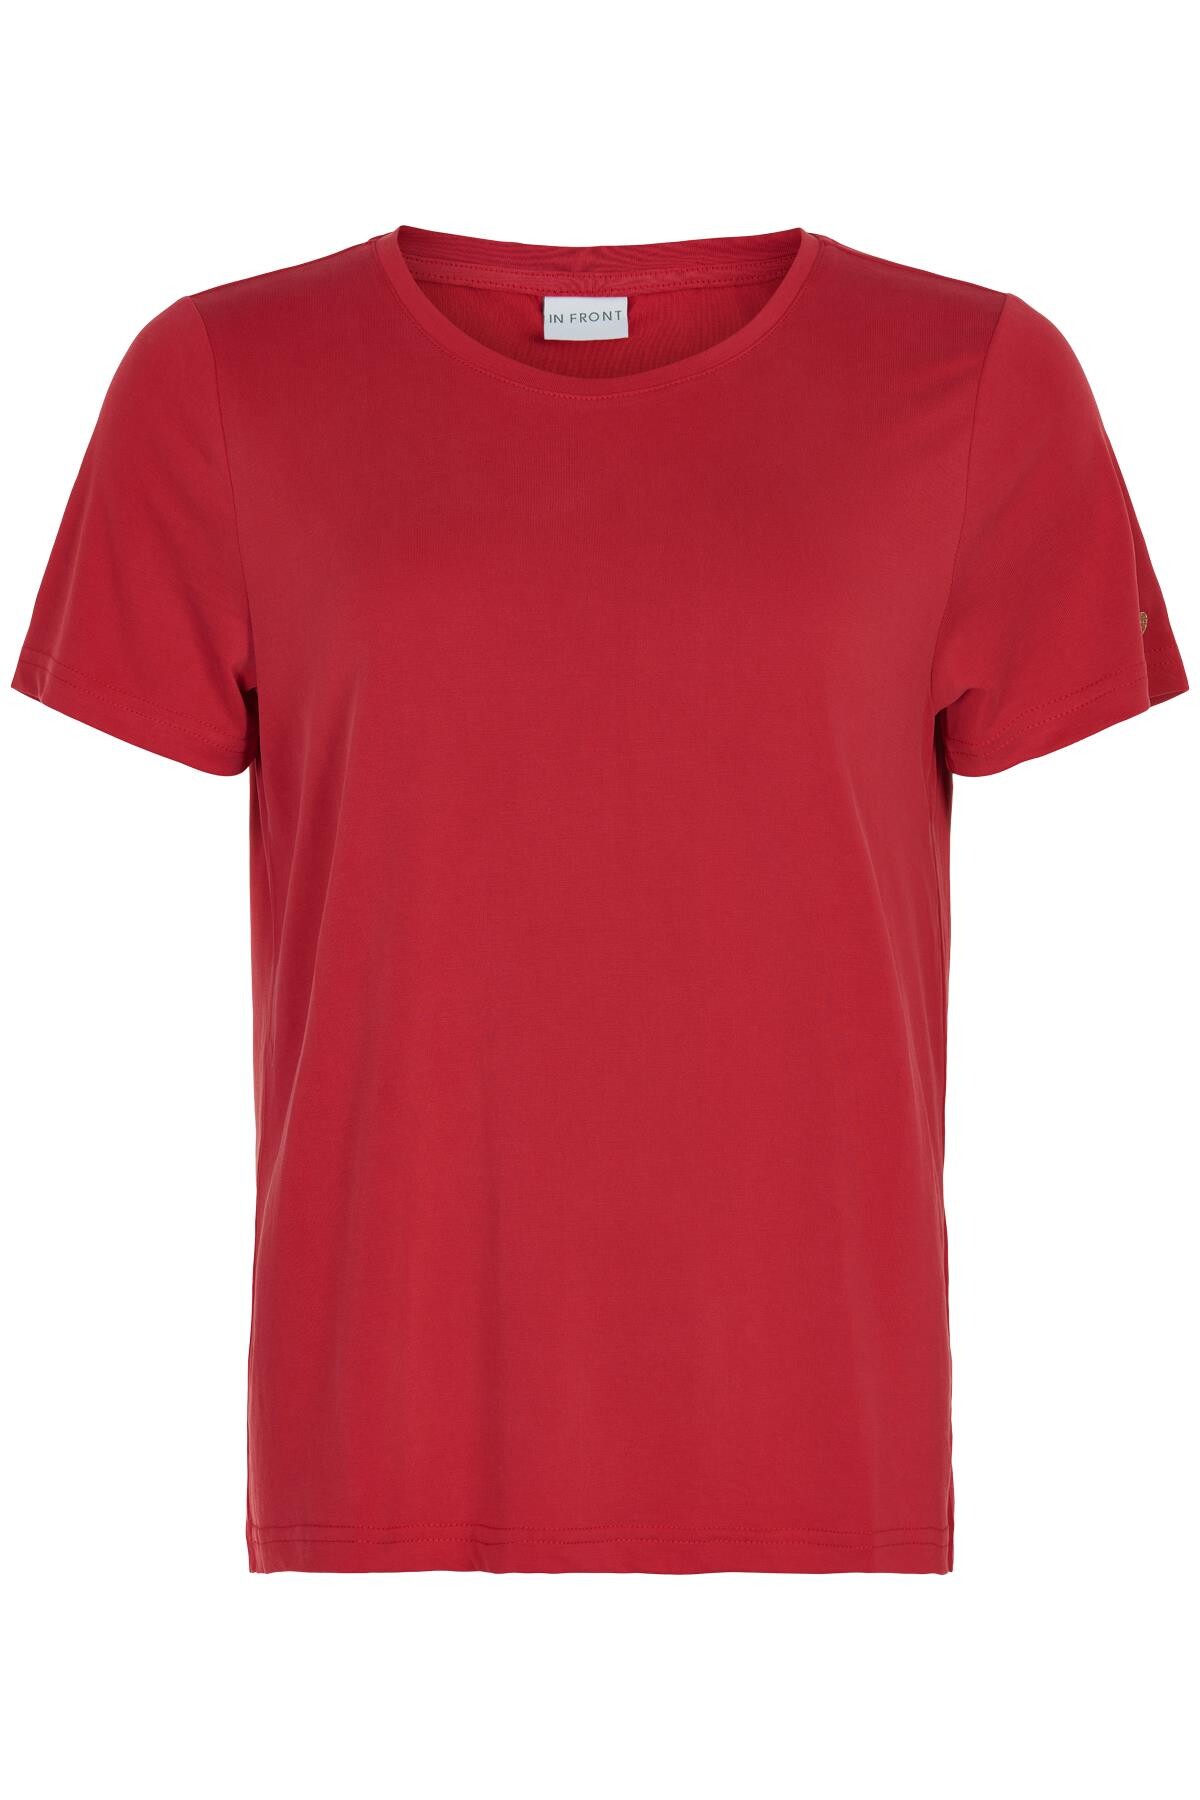 In Front Nina T-shirt, Farve: Rød, Størrelse: XXL, Dame